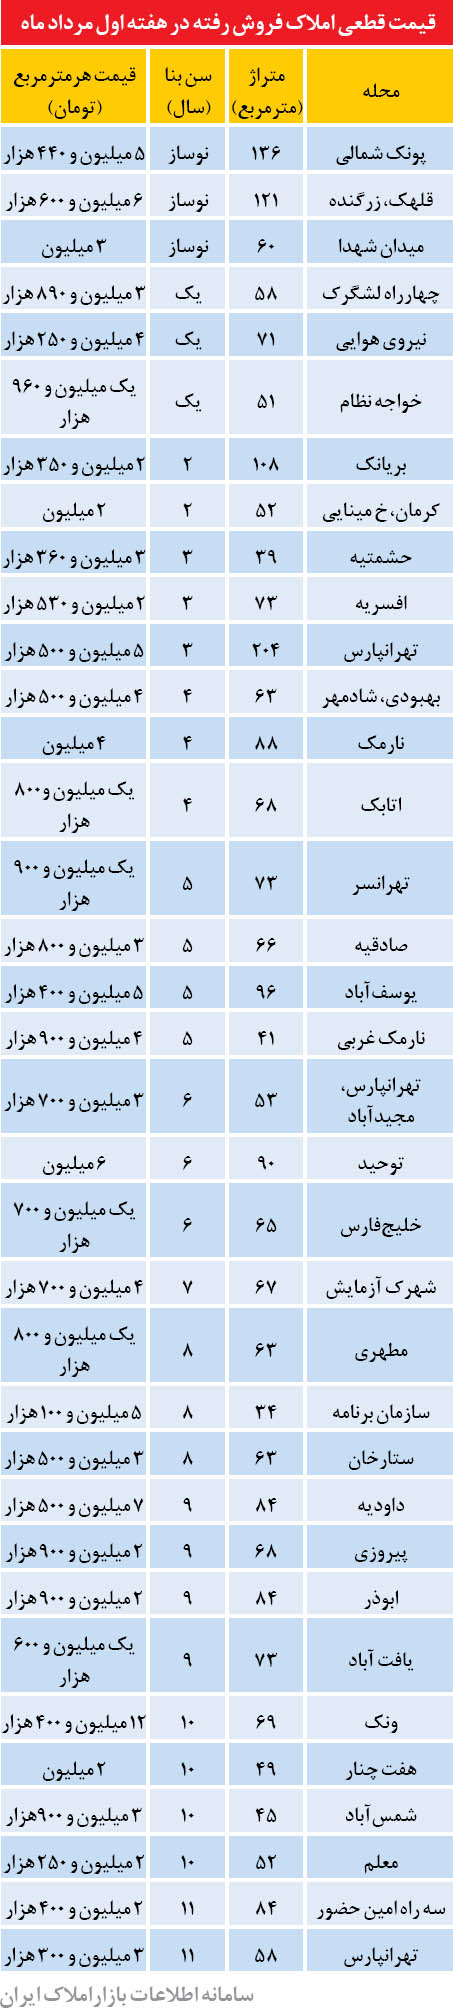 قیمت آپارتمان در تهران (+جدول)